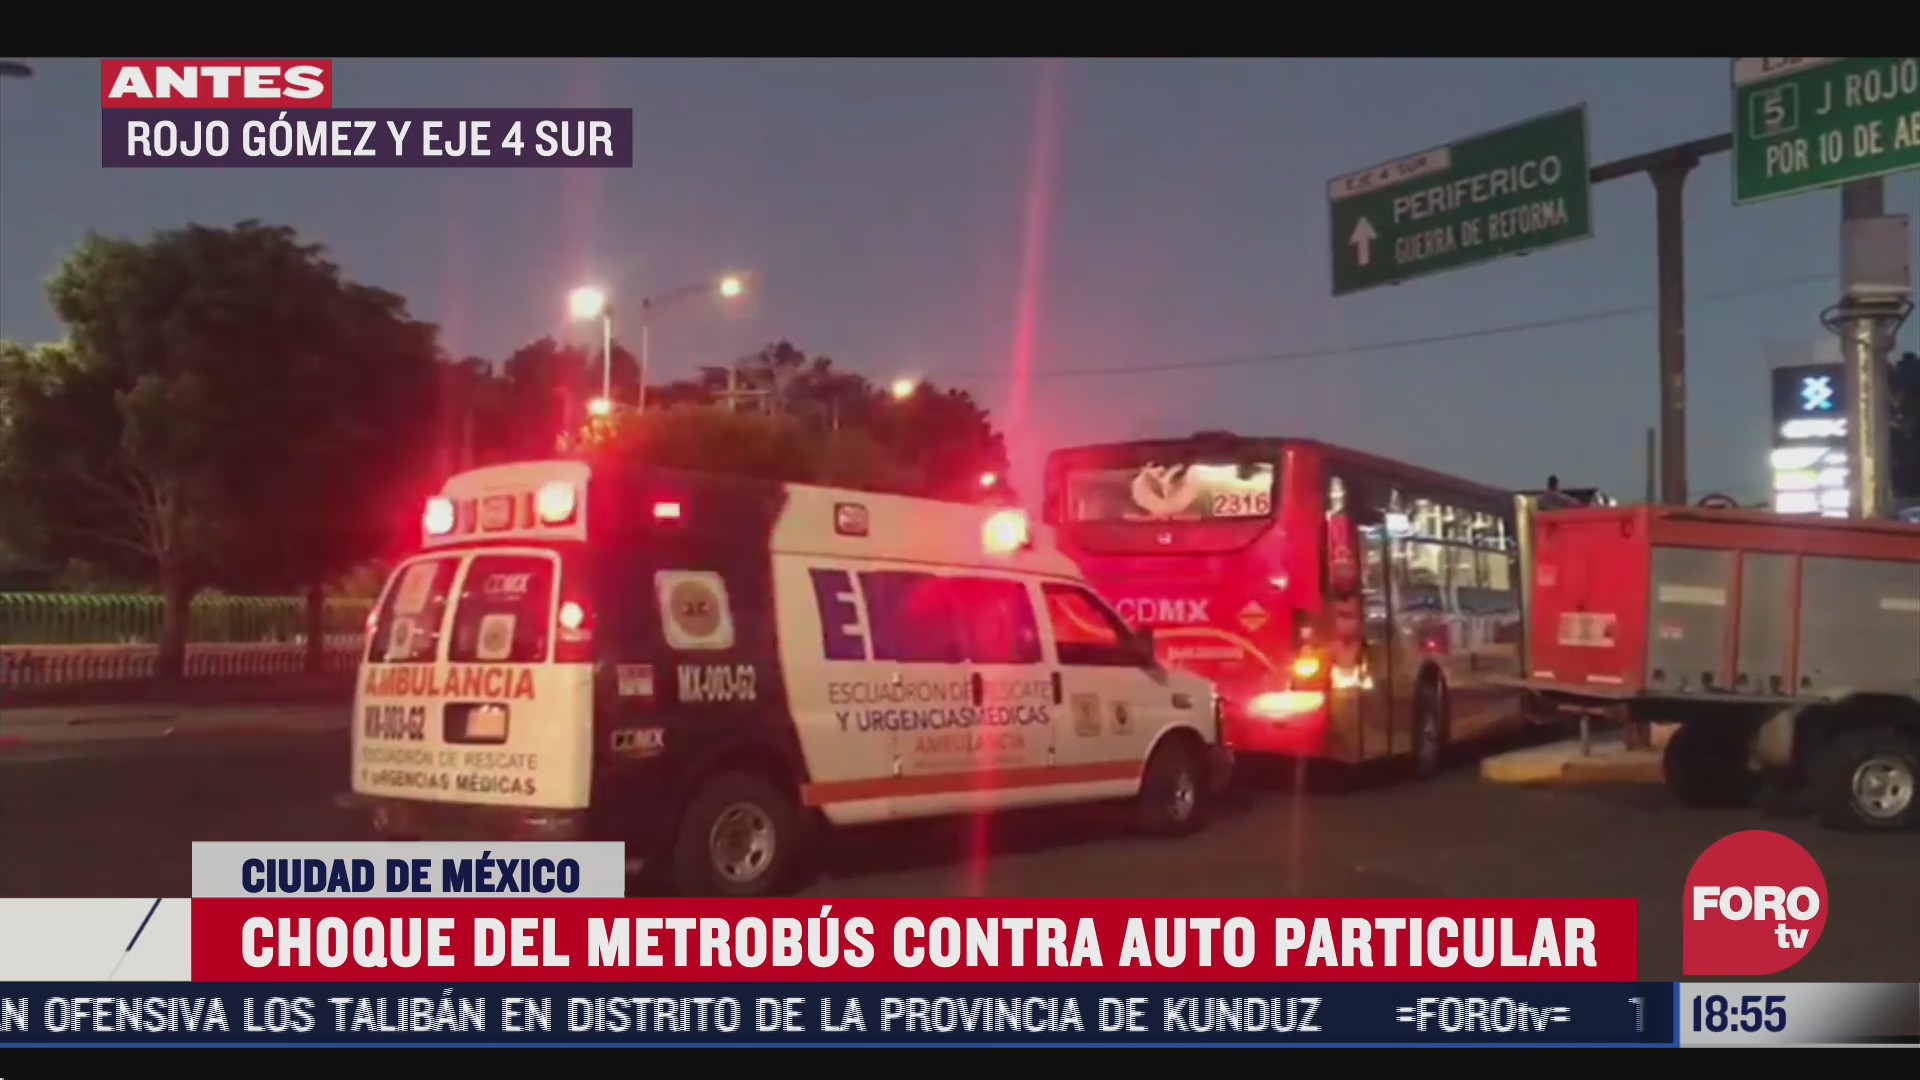 choca metrobus con auto en rojo gomez cdmx